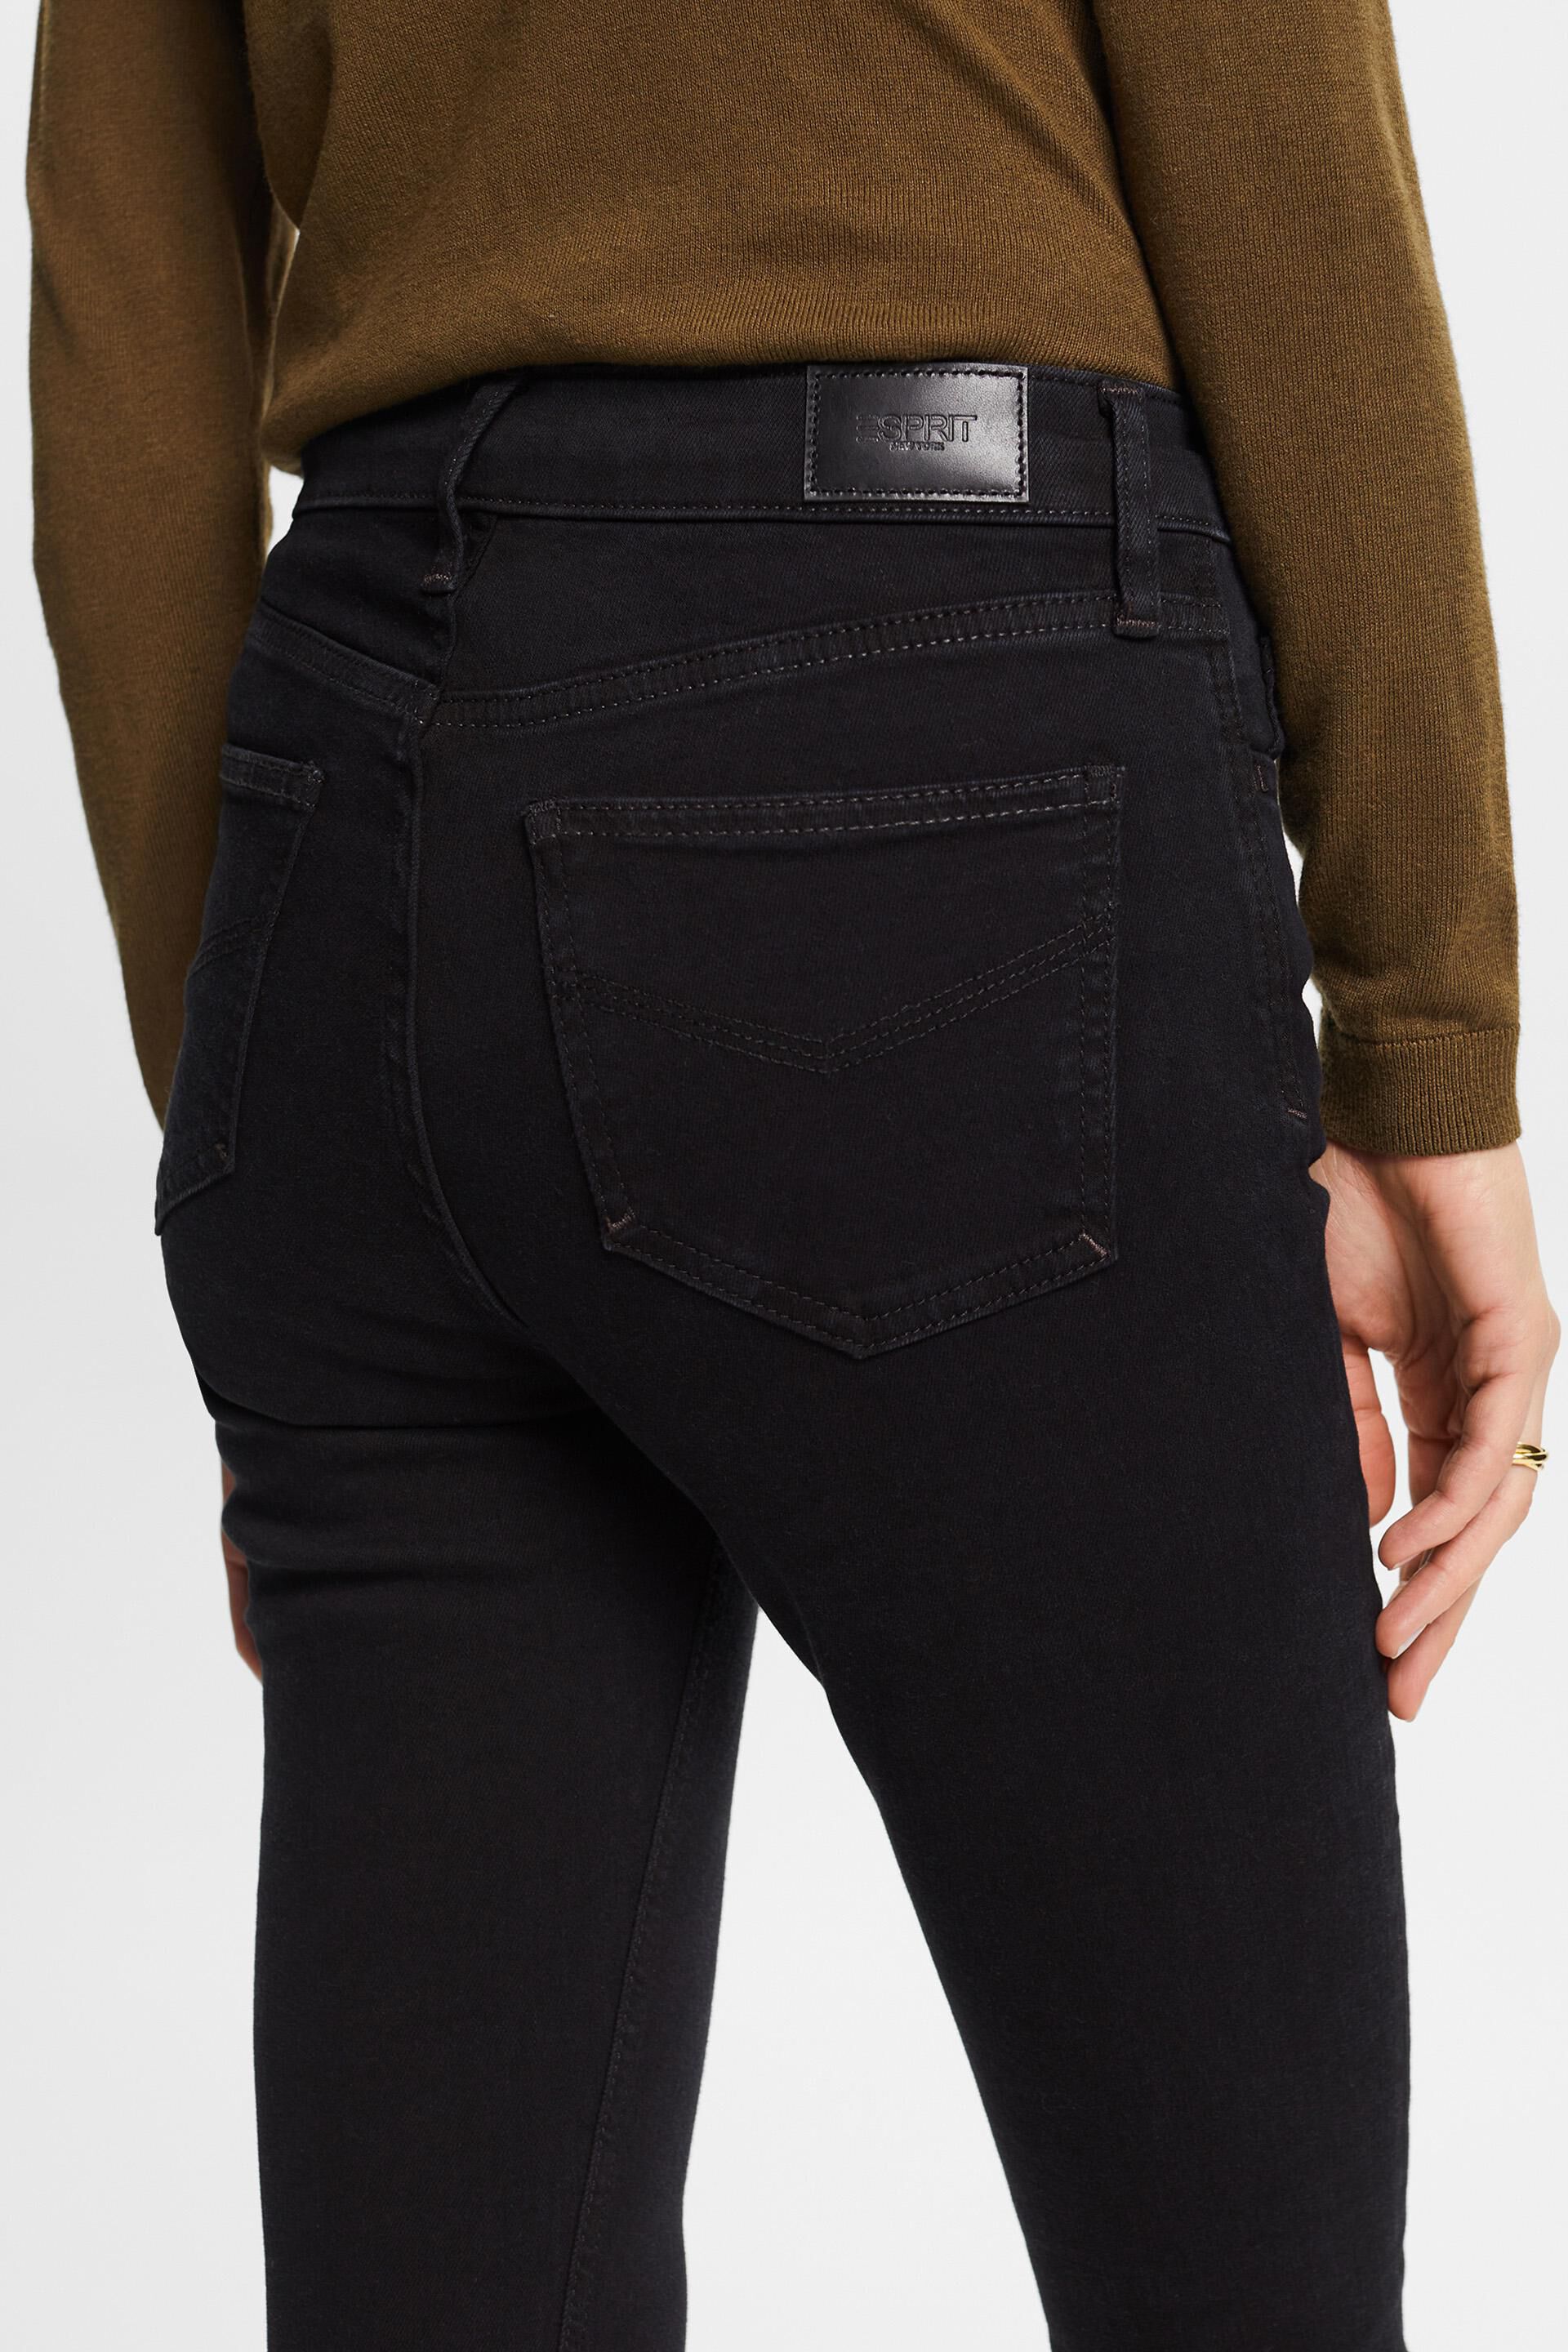 Esprit Bund Skinny-Fit-Jeans mit hohem Hochwertige